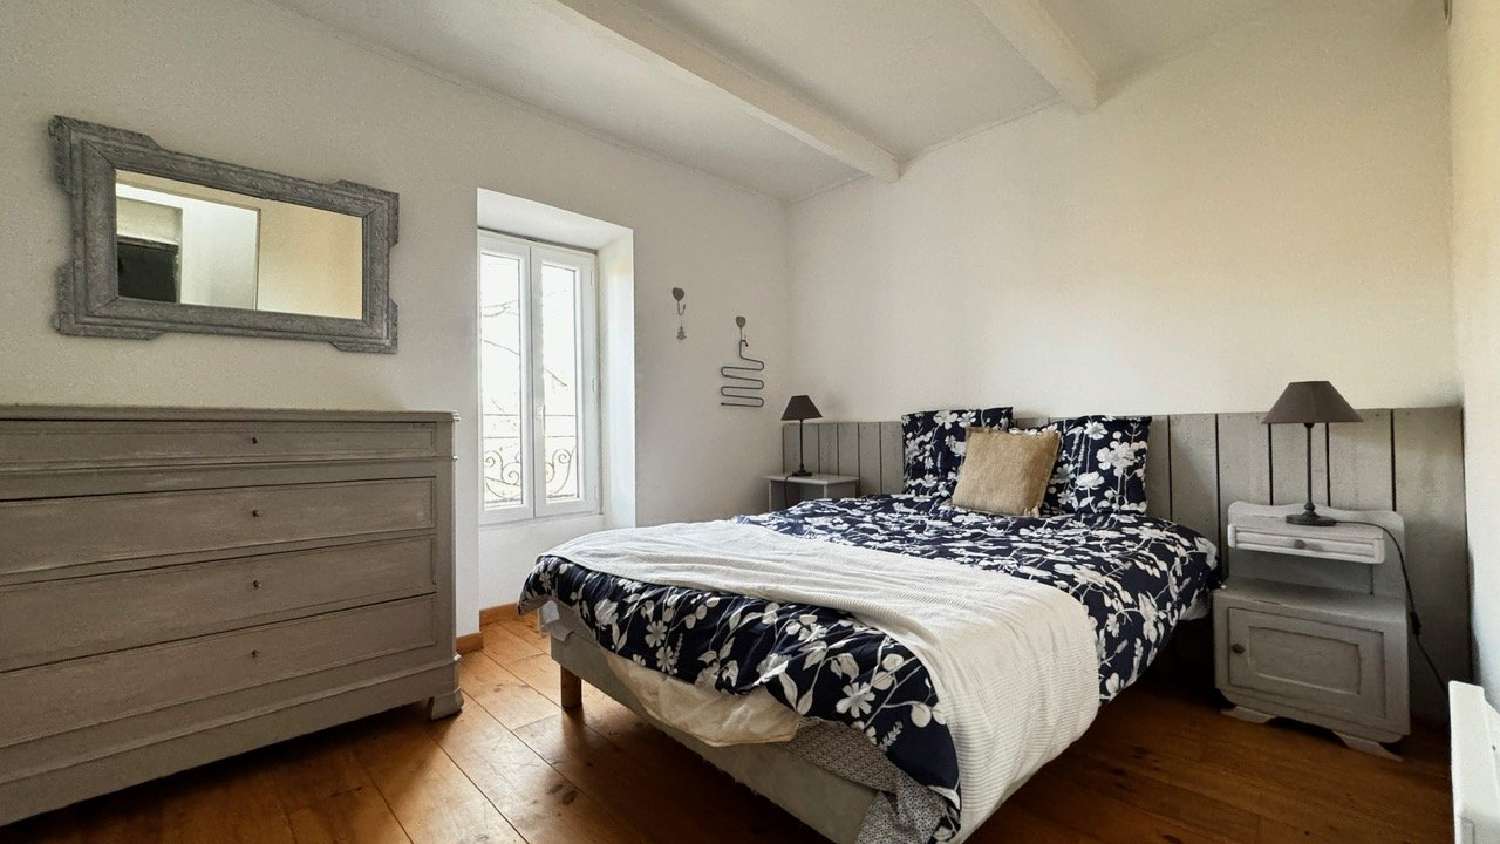  à vendre maison Cazouls-lès-Béziers Hérault 6